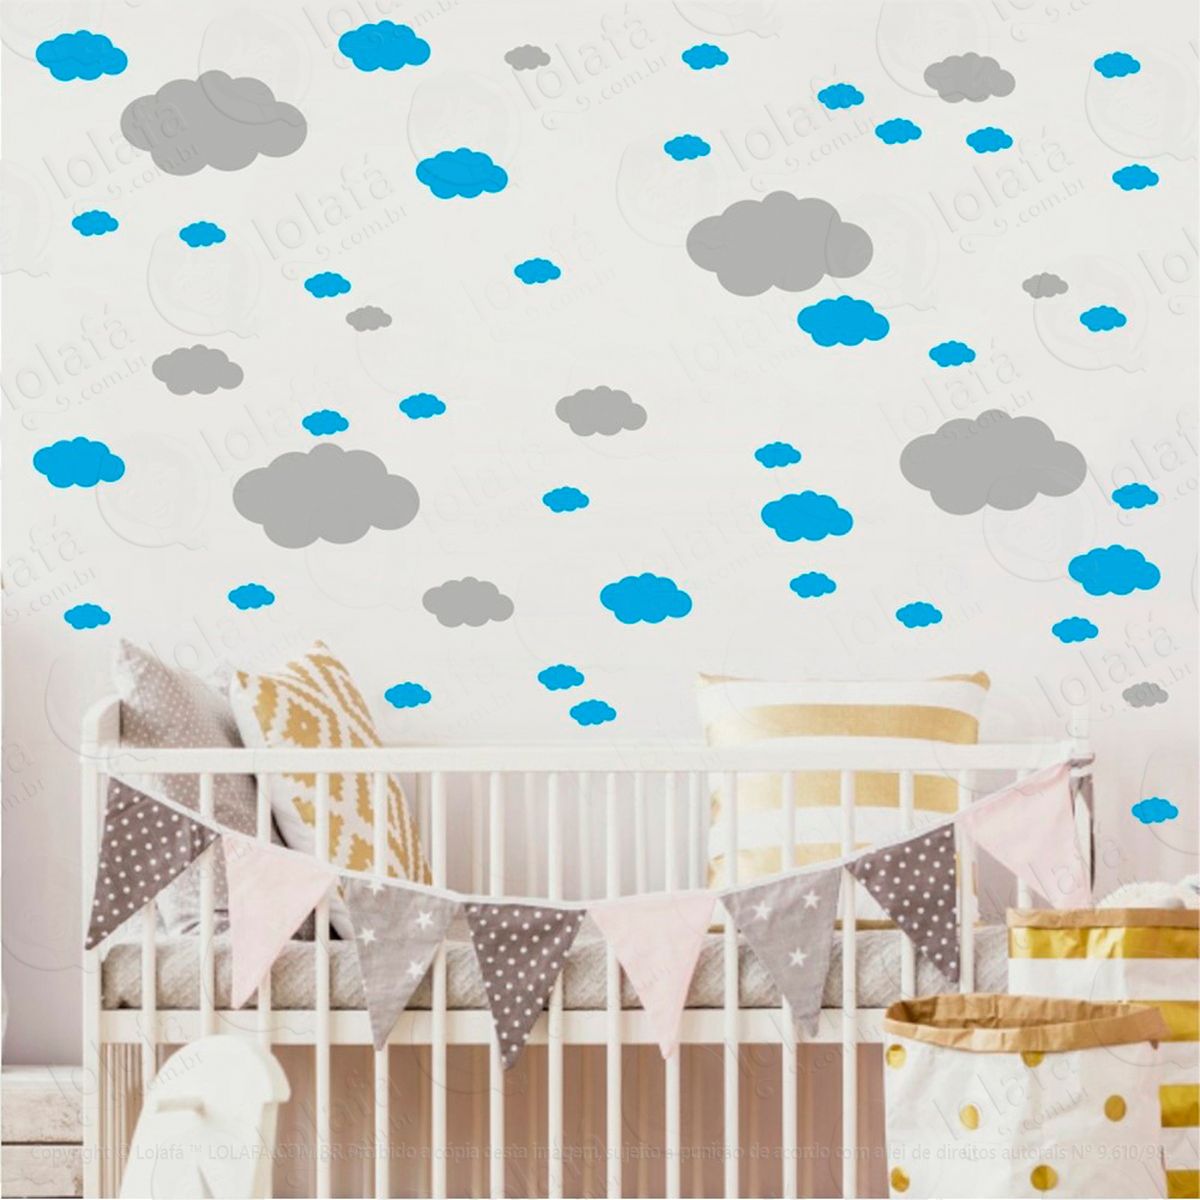 adesivos nuvens 62 peças adesivos para quarto de bebê infantil - mod:822